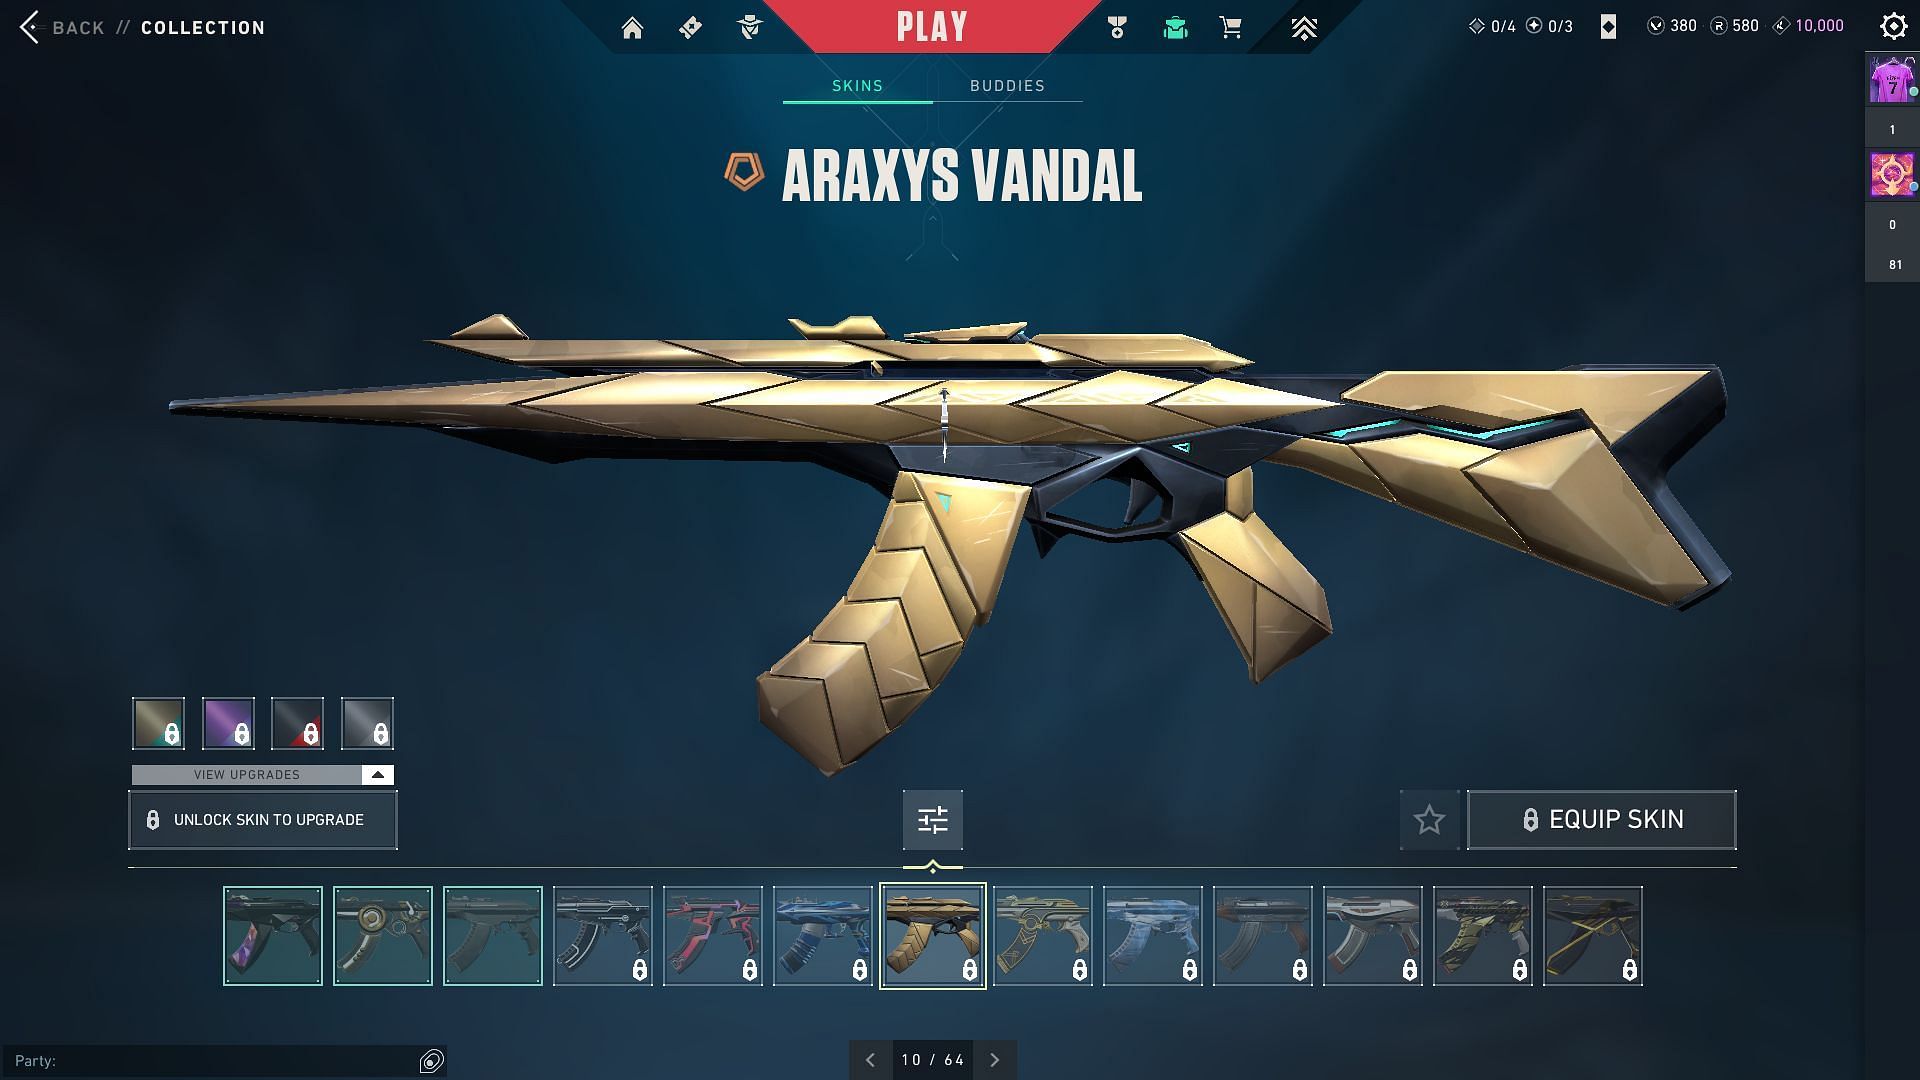 Aaraxys Vandal (Image via Riot Games)